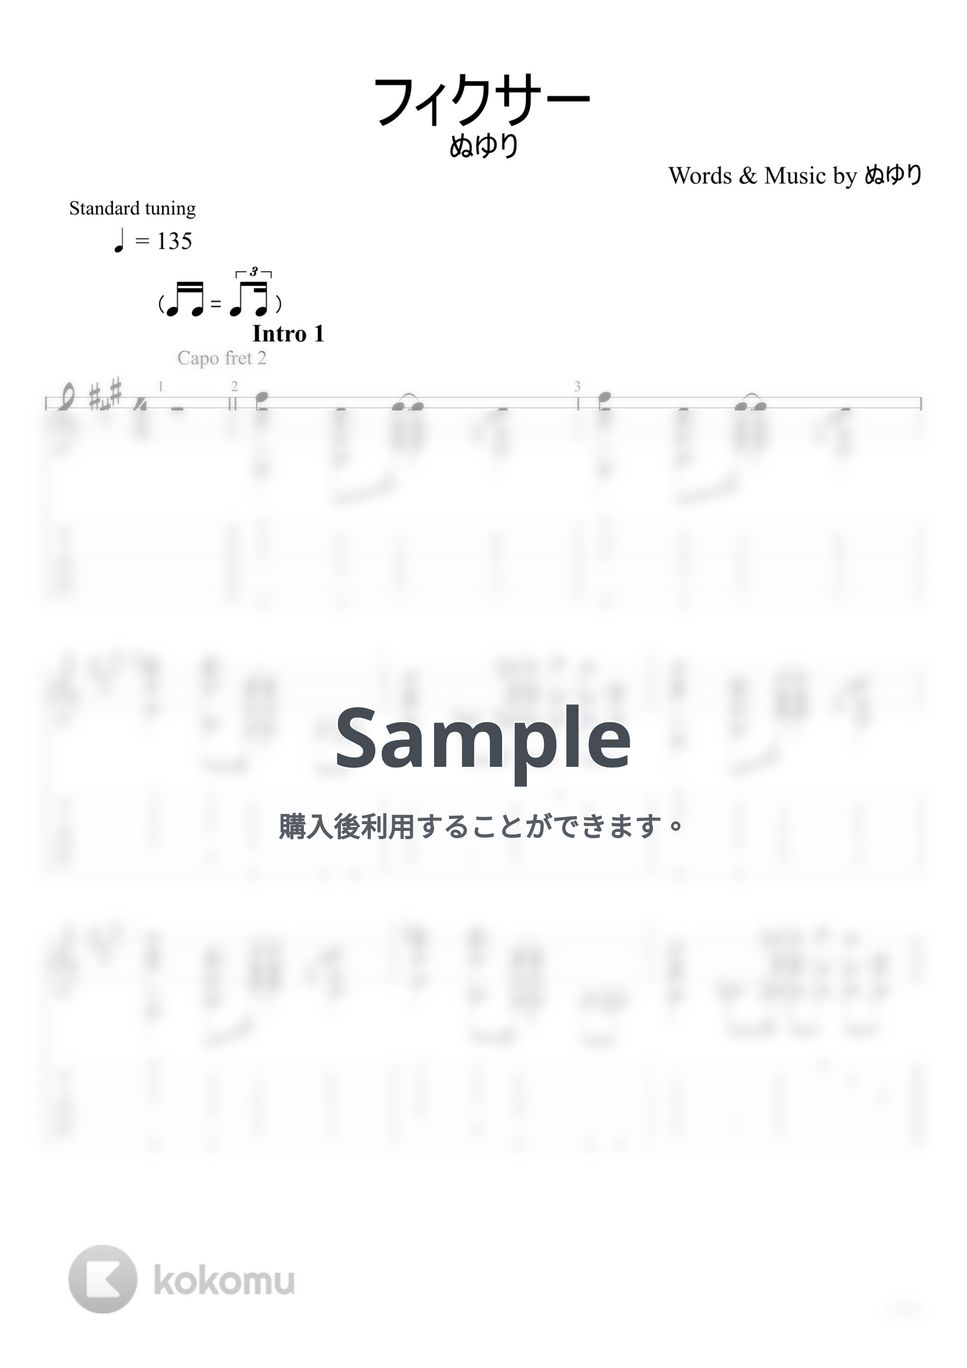 ぬゆり - フィクサー (ソロギター) by u3danchou